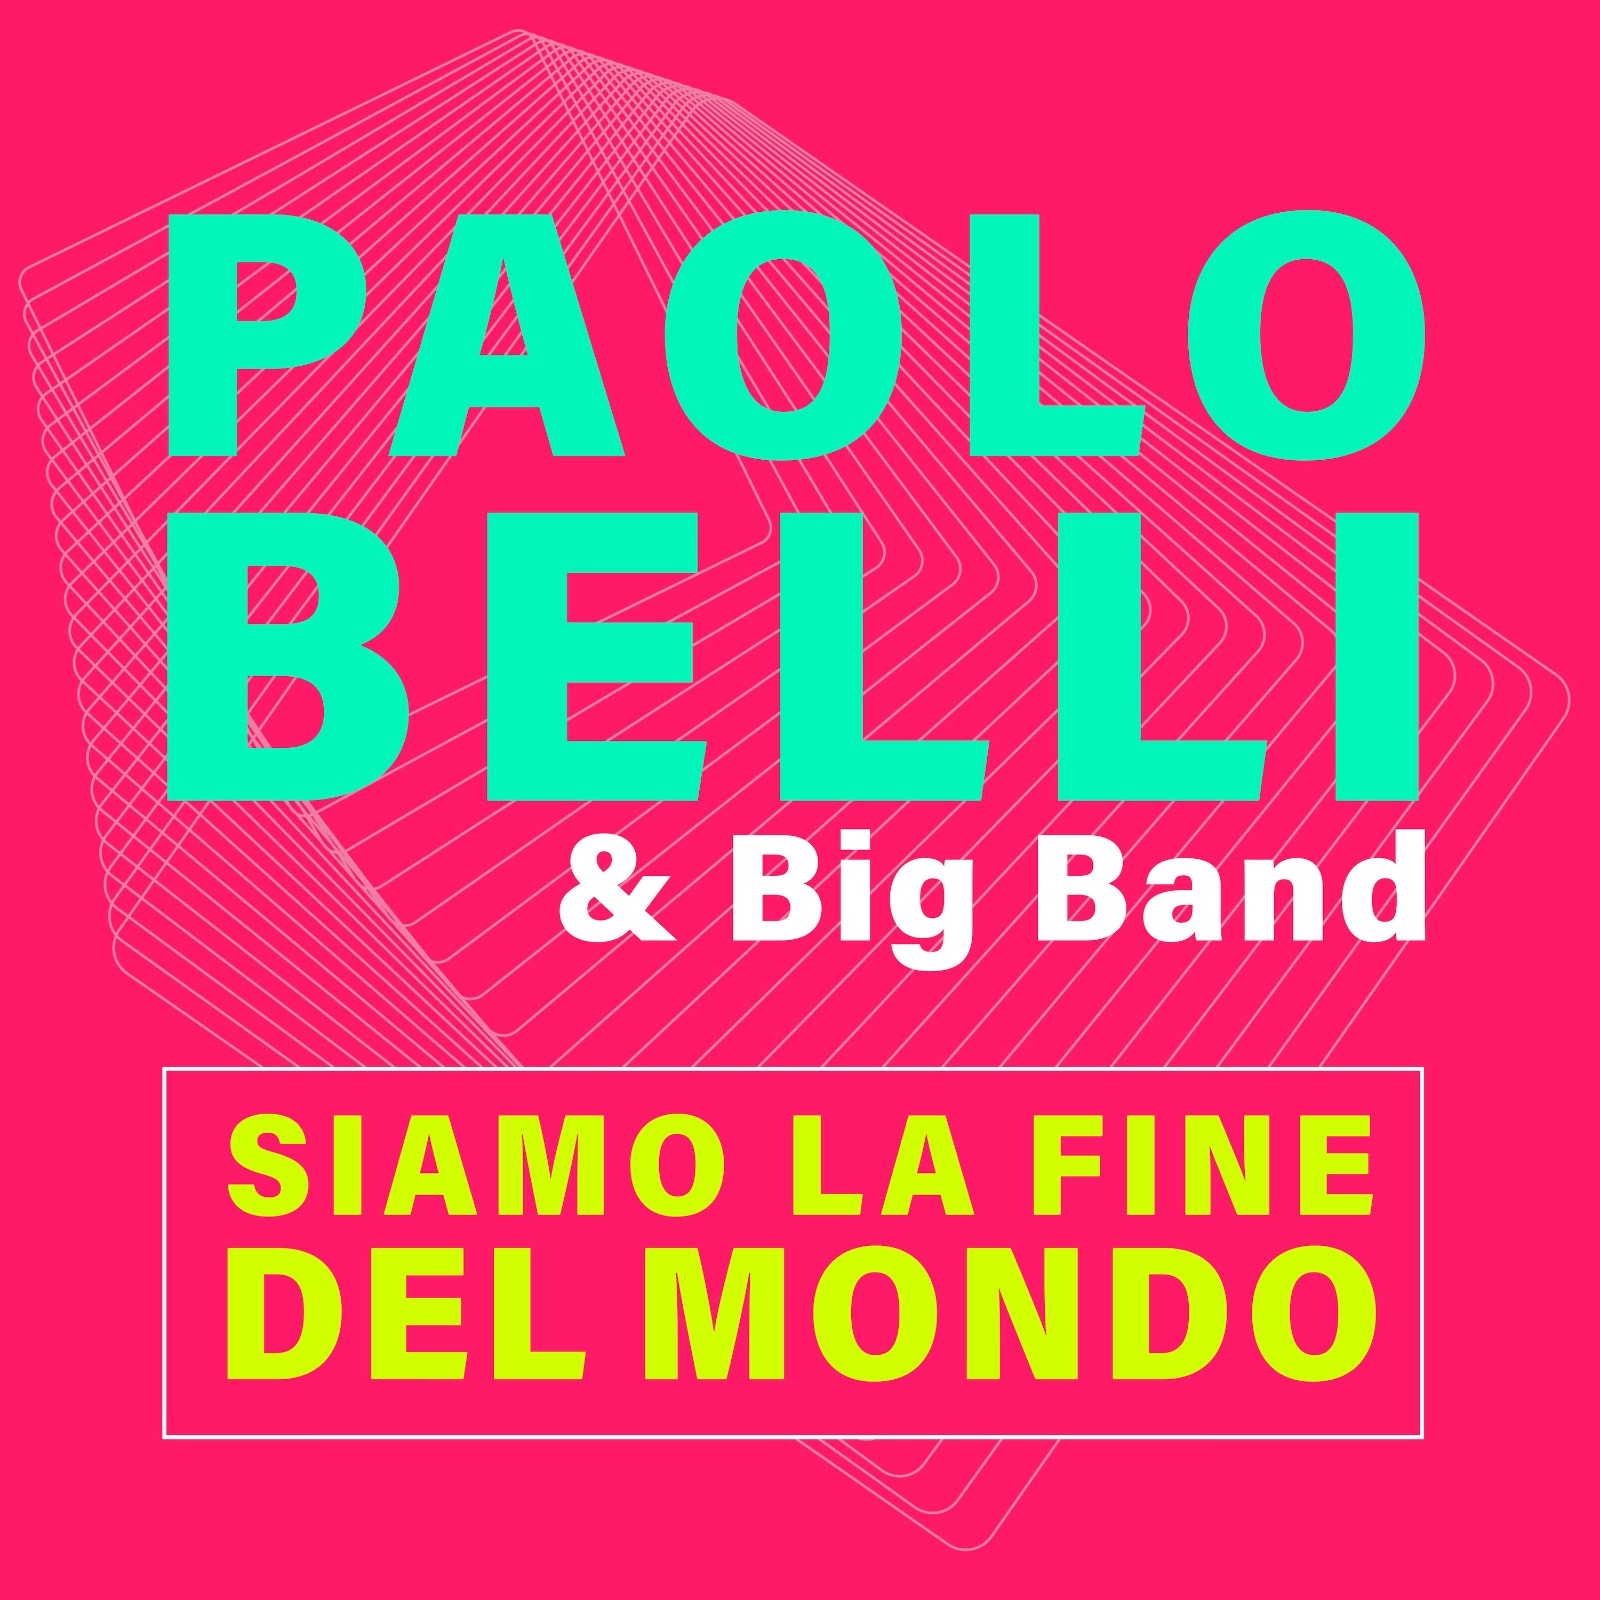 La fine del mondo… siamo noi! Paolo Belli torna “on air” con il nuovo singolo